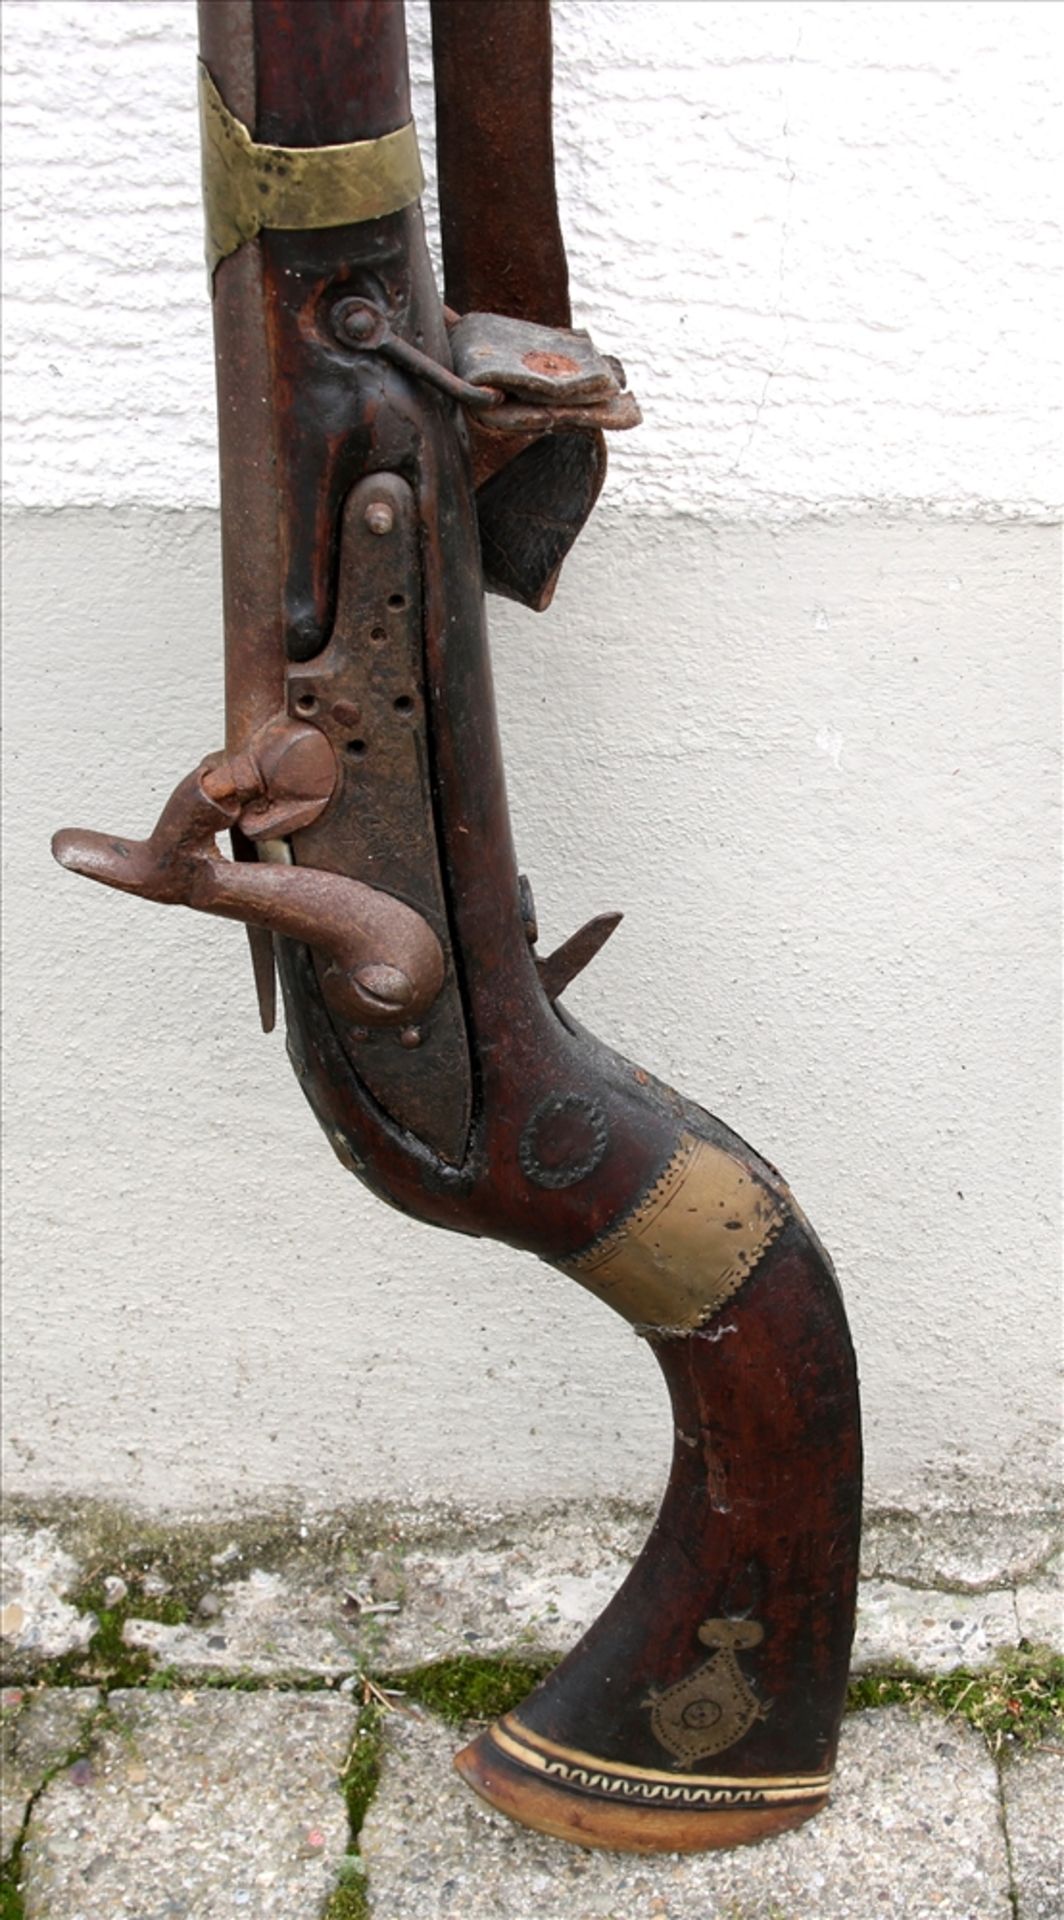 Steinschlossgewehr Aghanistan um 1900. Länge ca. 149 cm. Nicht geprüft, teils defekt. - Bild 3 aus 3